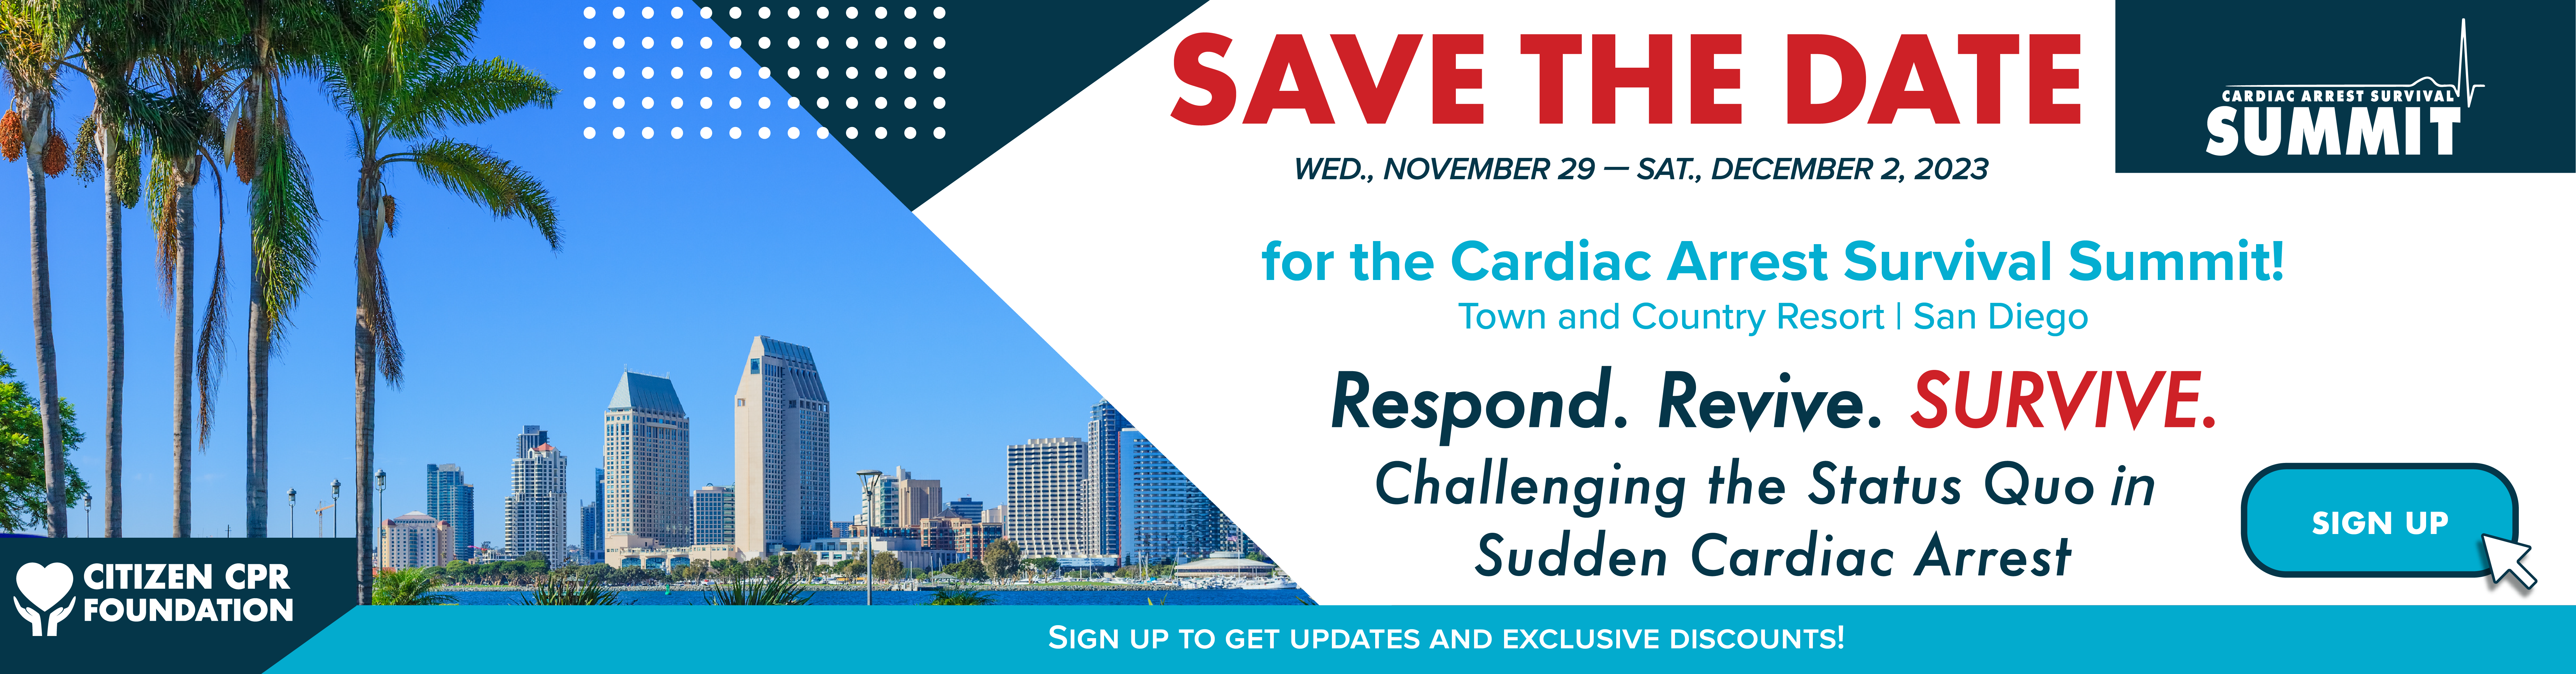 Cardiac Arrest Survival Summit 2021 - Citizen CPR